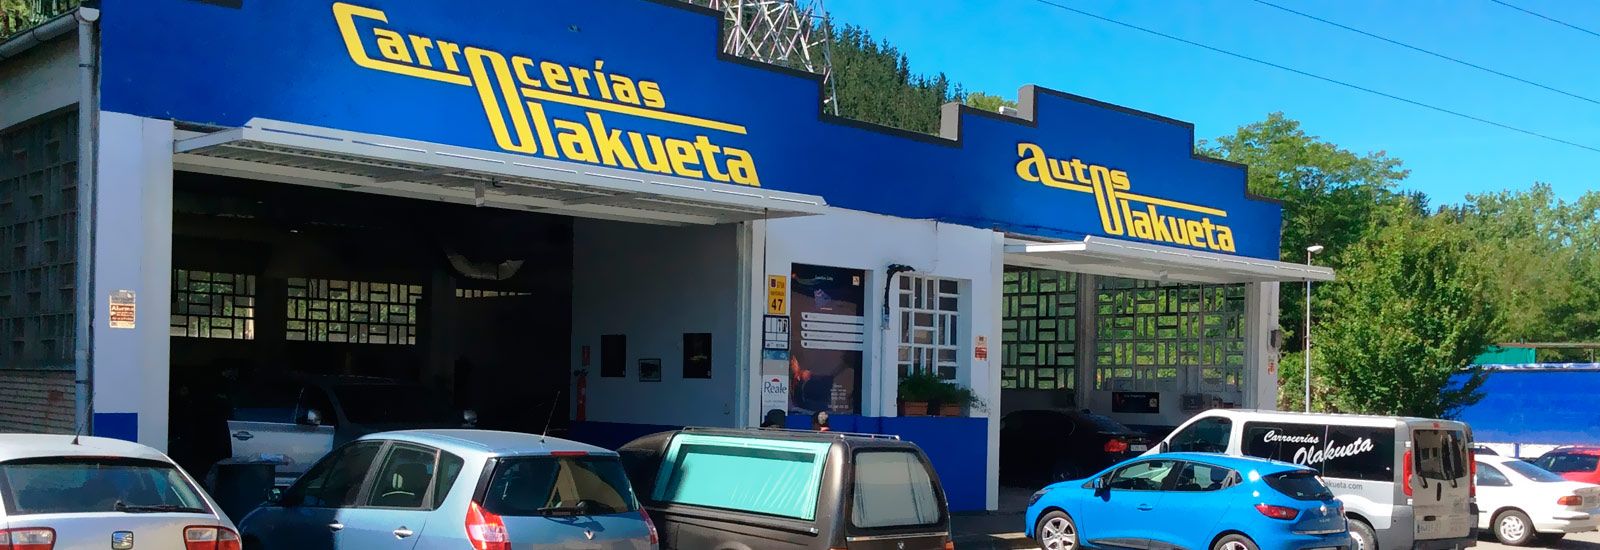 Autos Olakueta banner